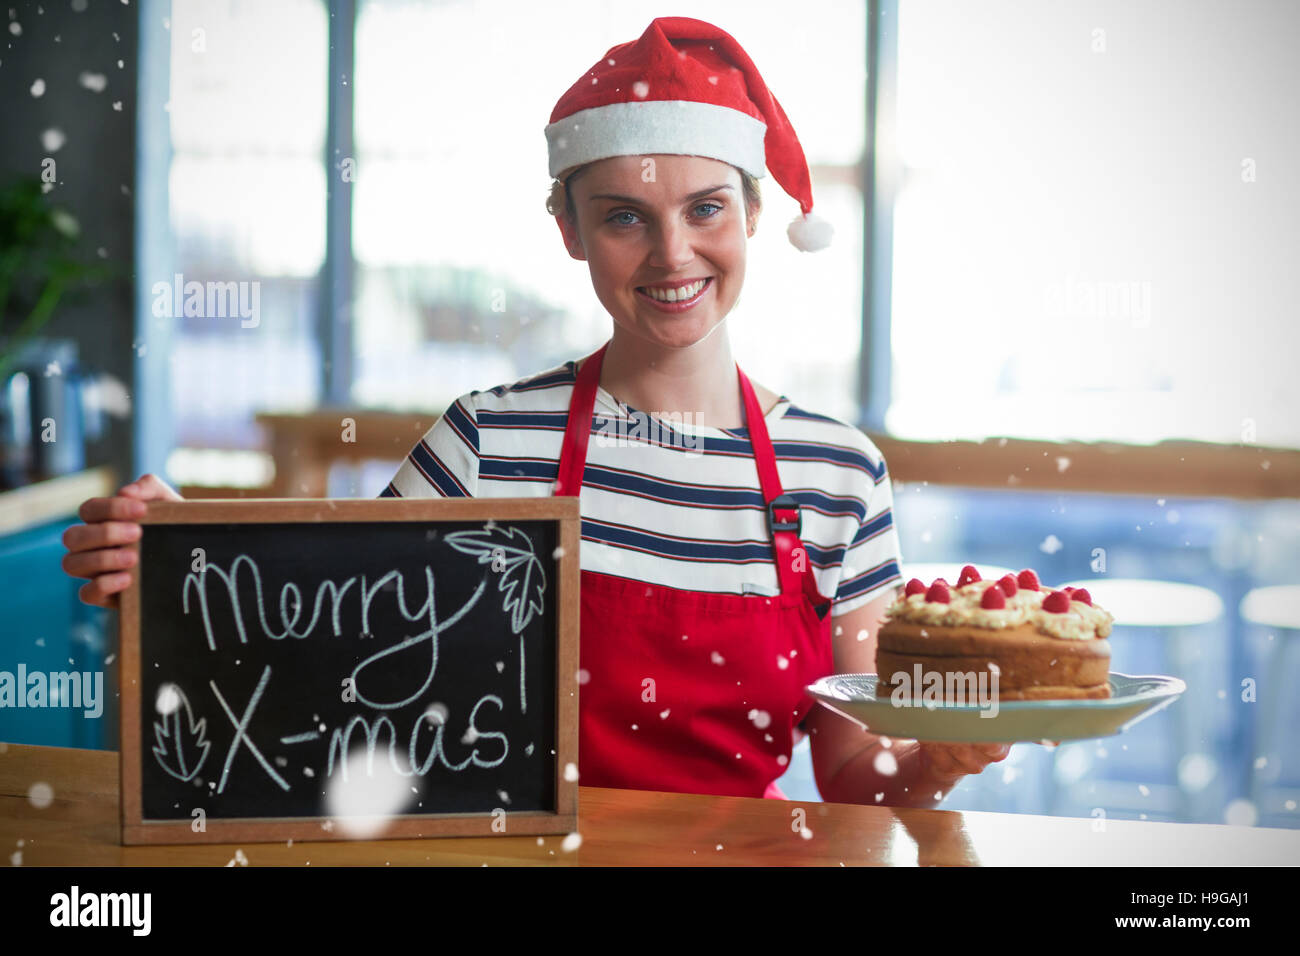 Zusammengesetztes Bild Porträt der Kellnerin mit Schiefer mit merry x-mas-Zeichen und Kuchen Stockfoto